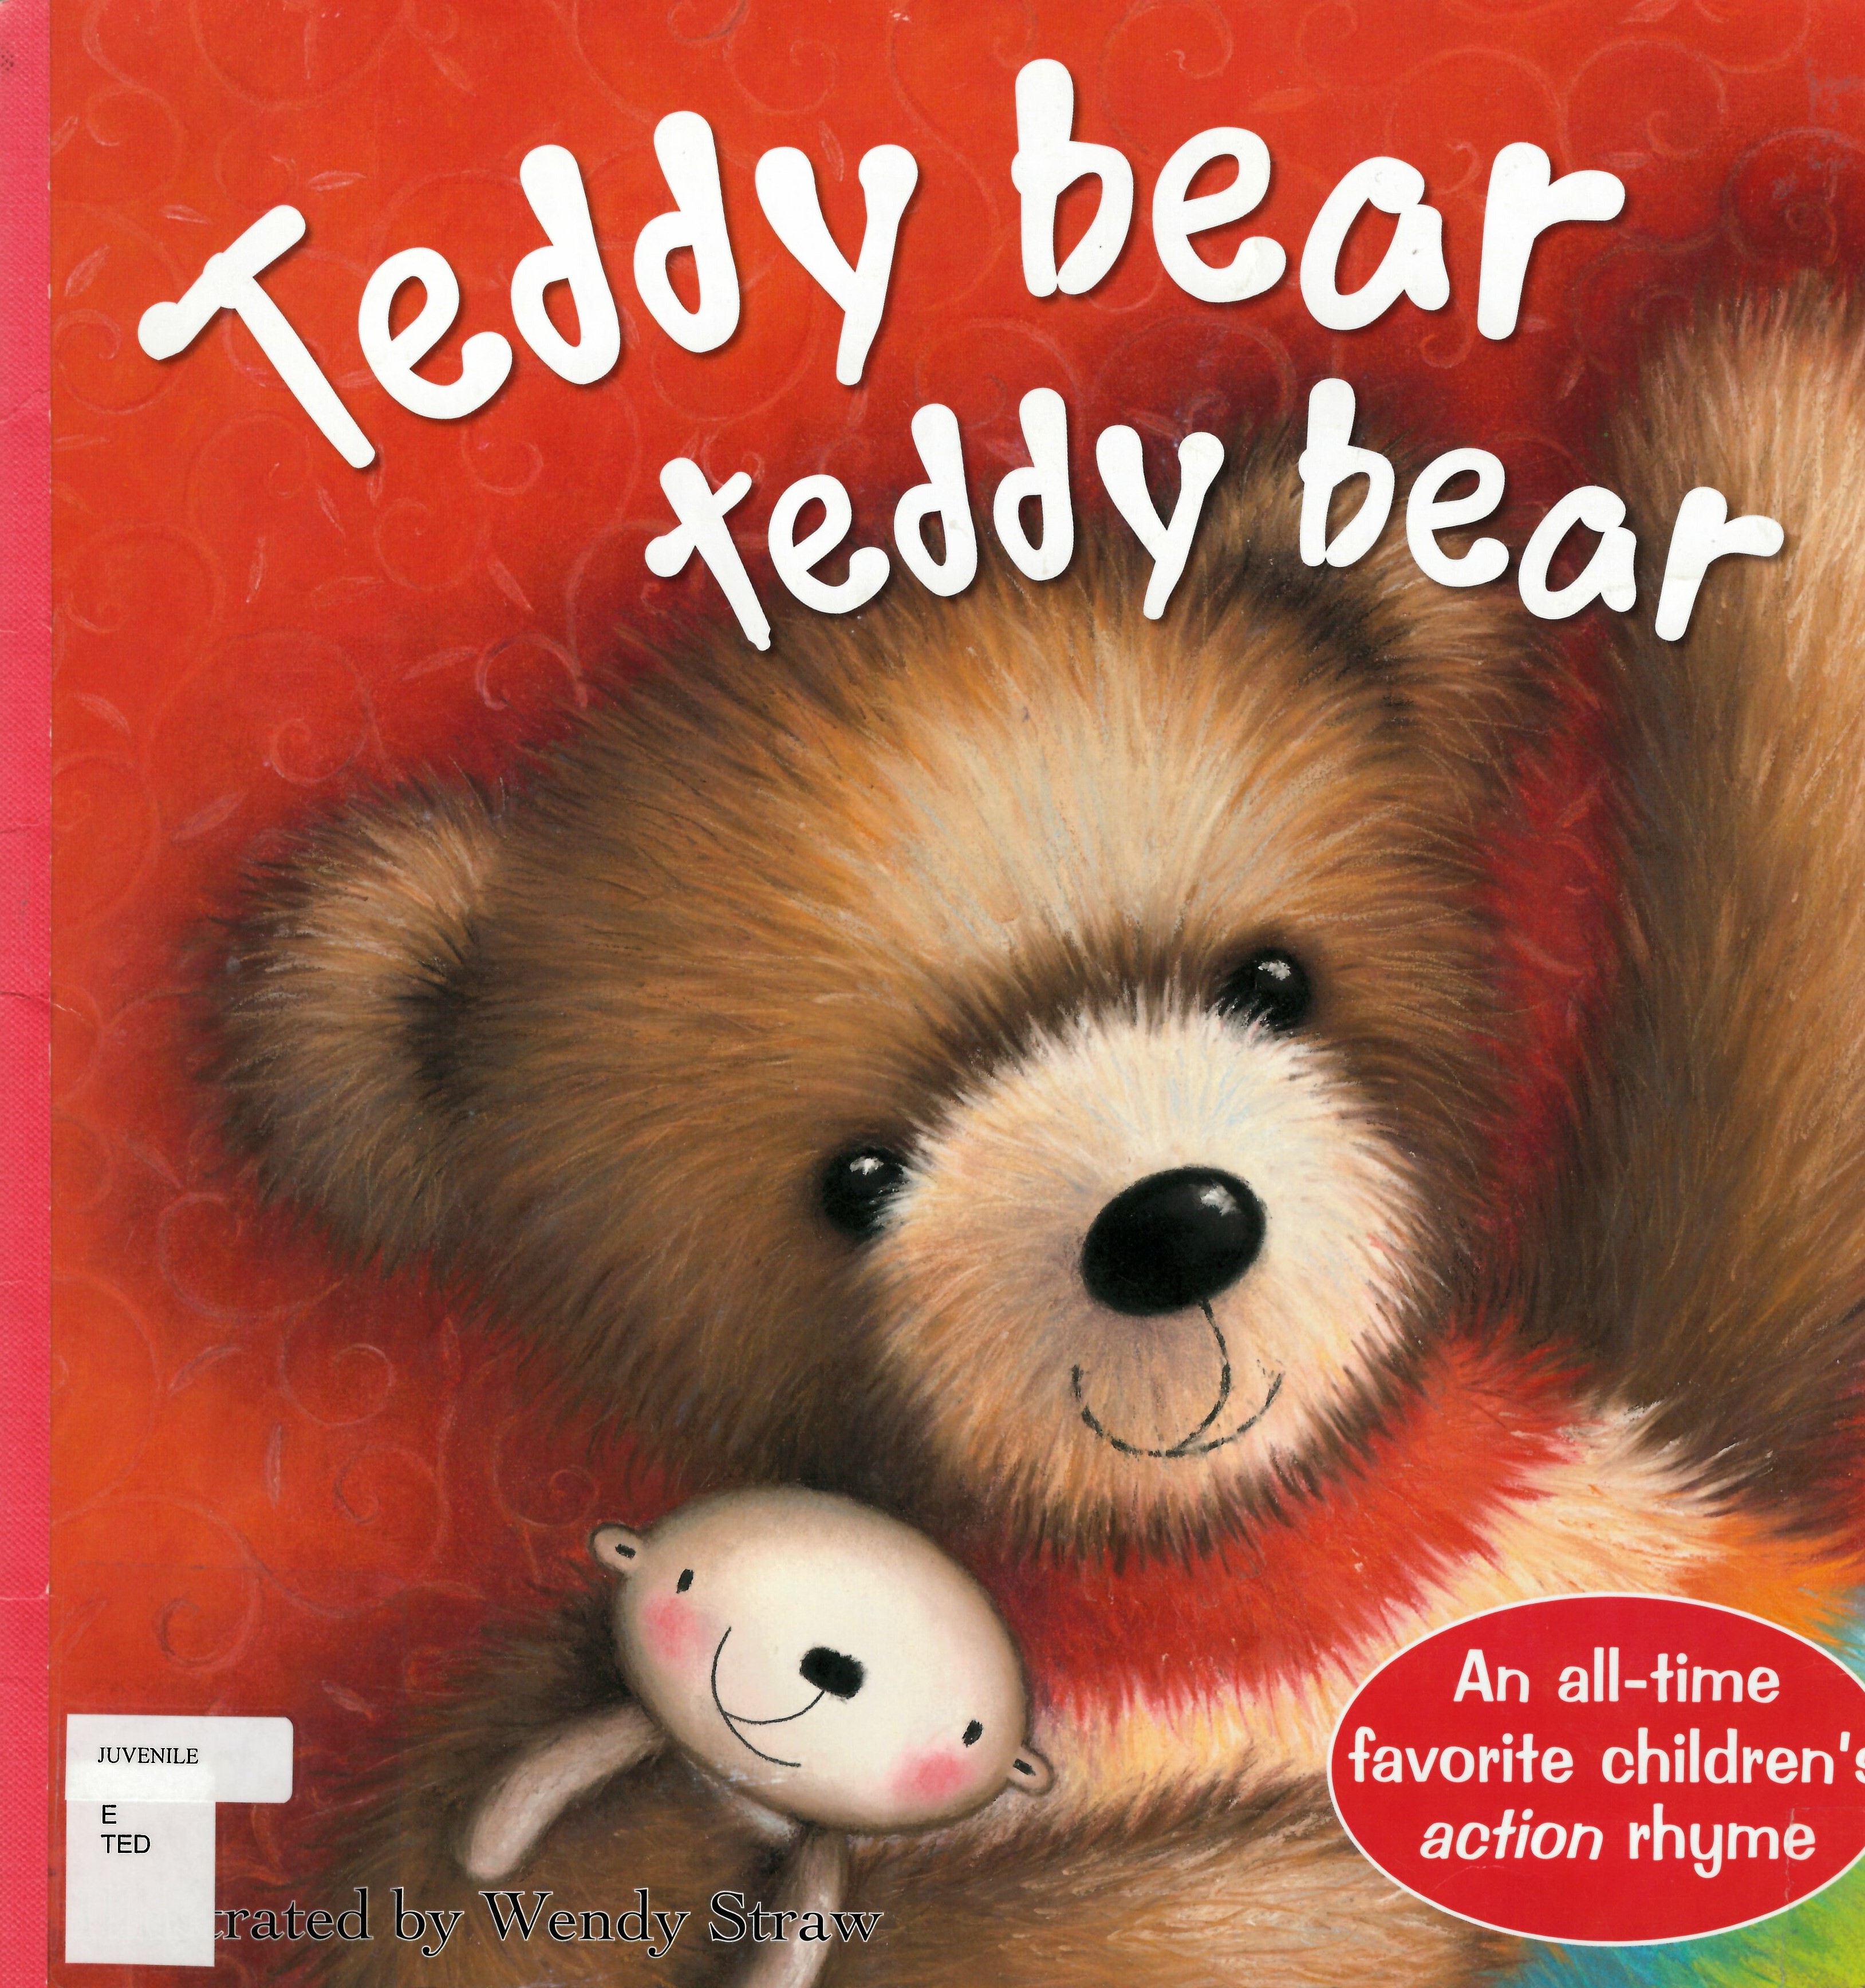 Teddy bear teddy bear